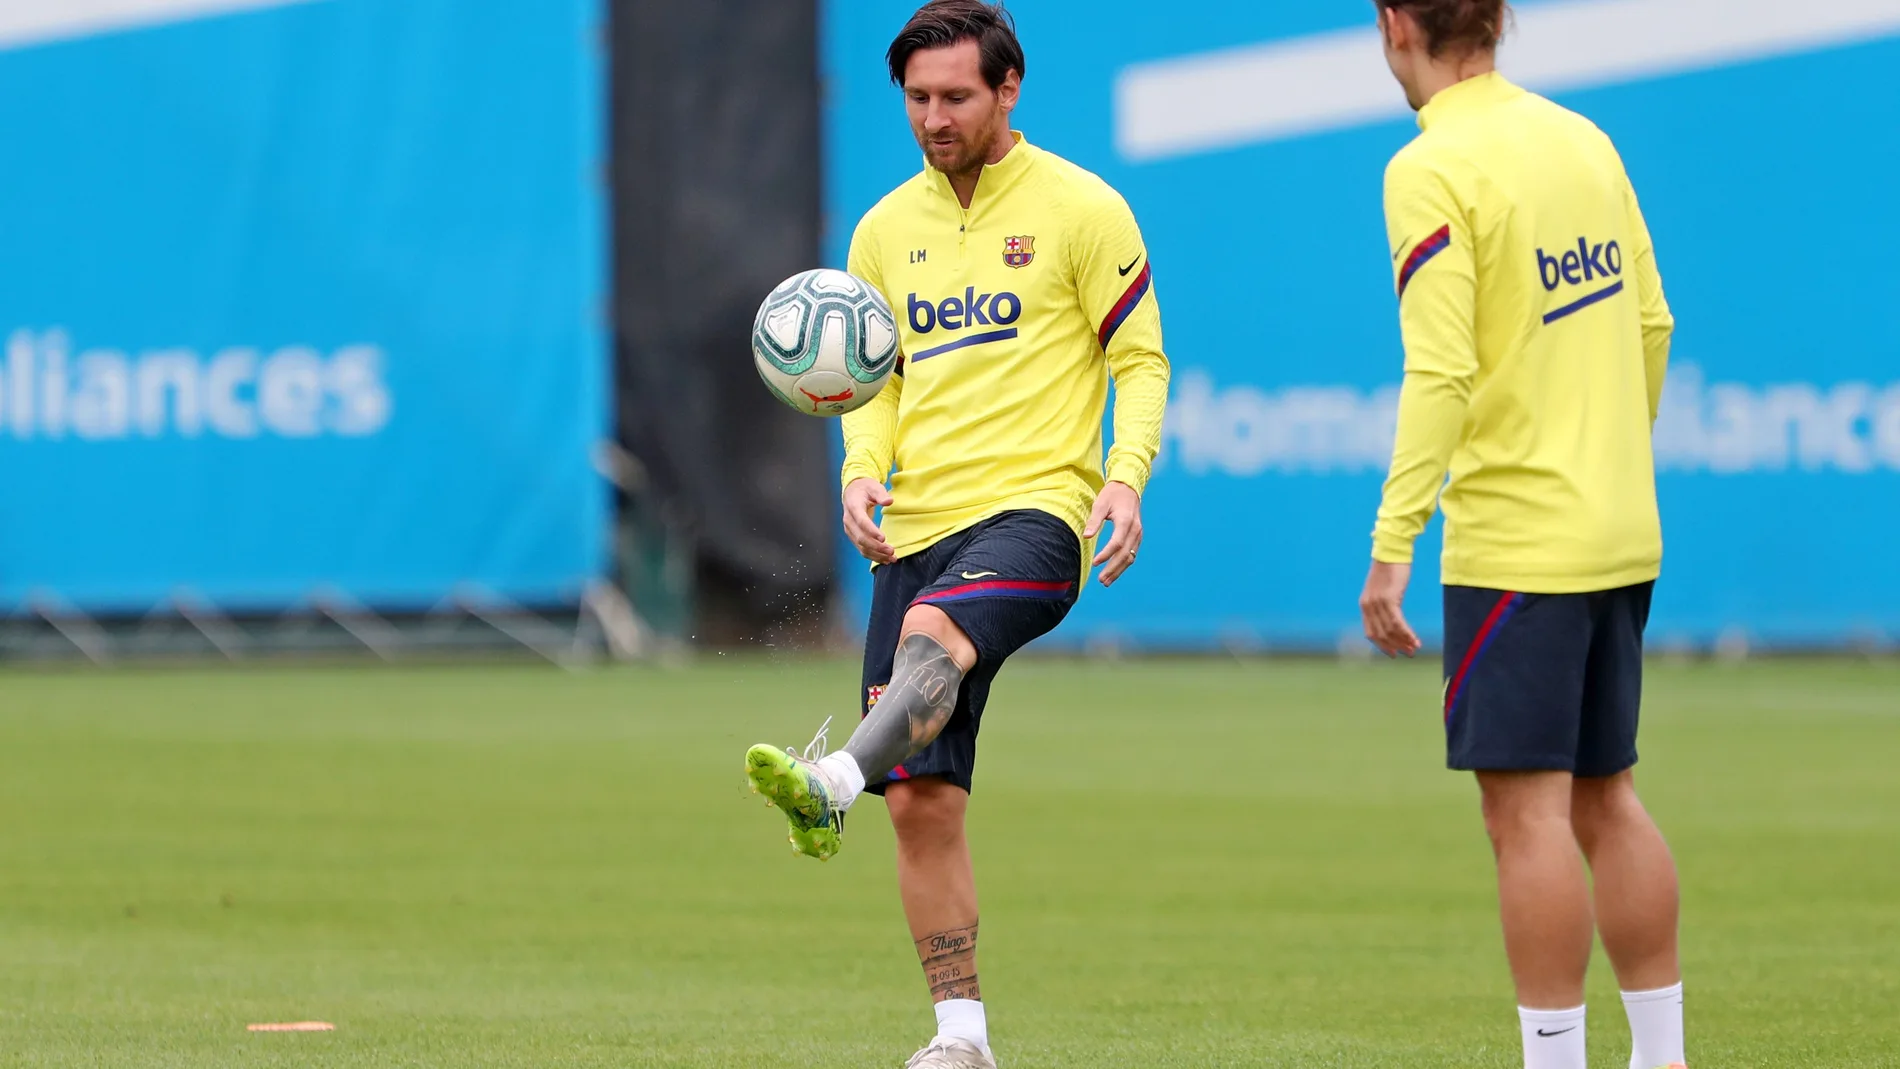 Messi, observado por Griezmann, da toques a un balón en un entrenamiento del Barcelona